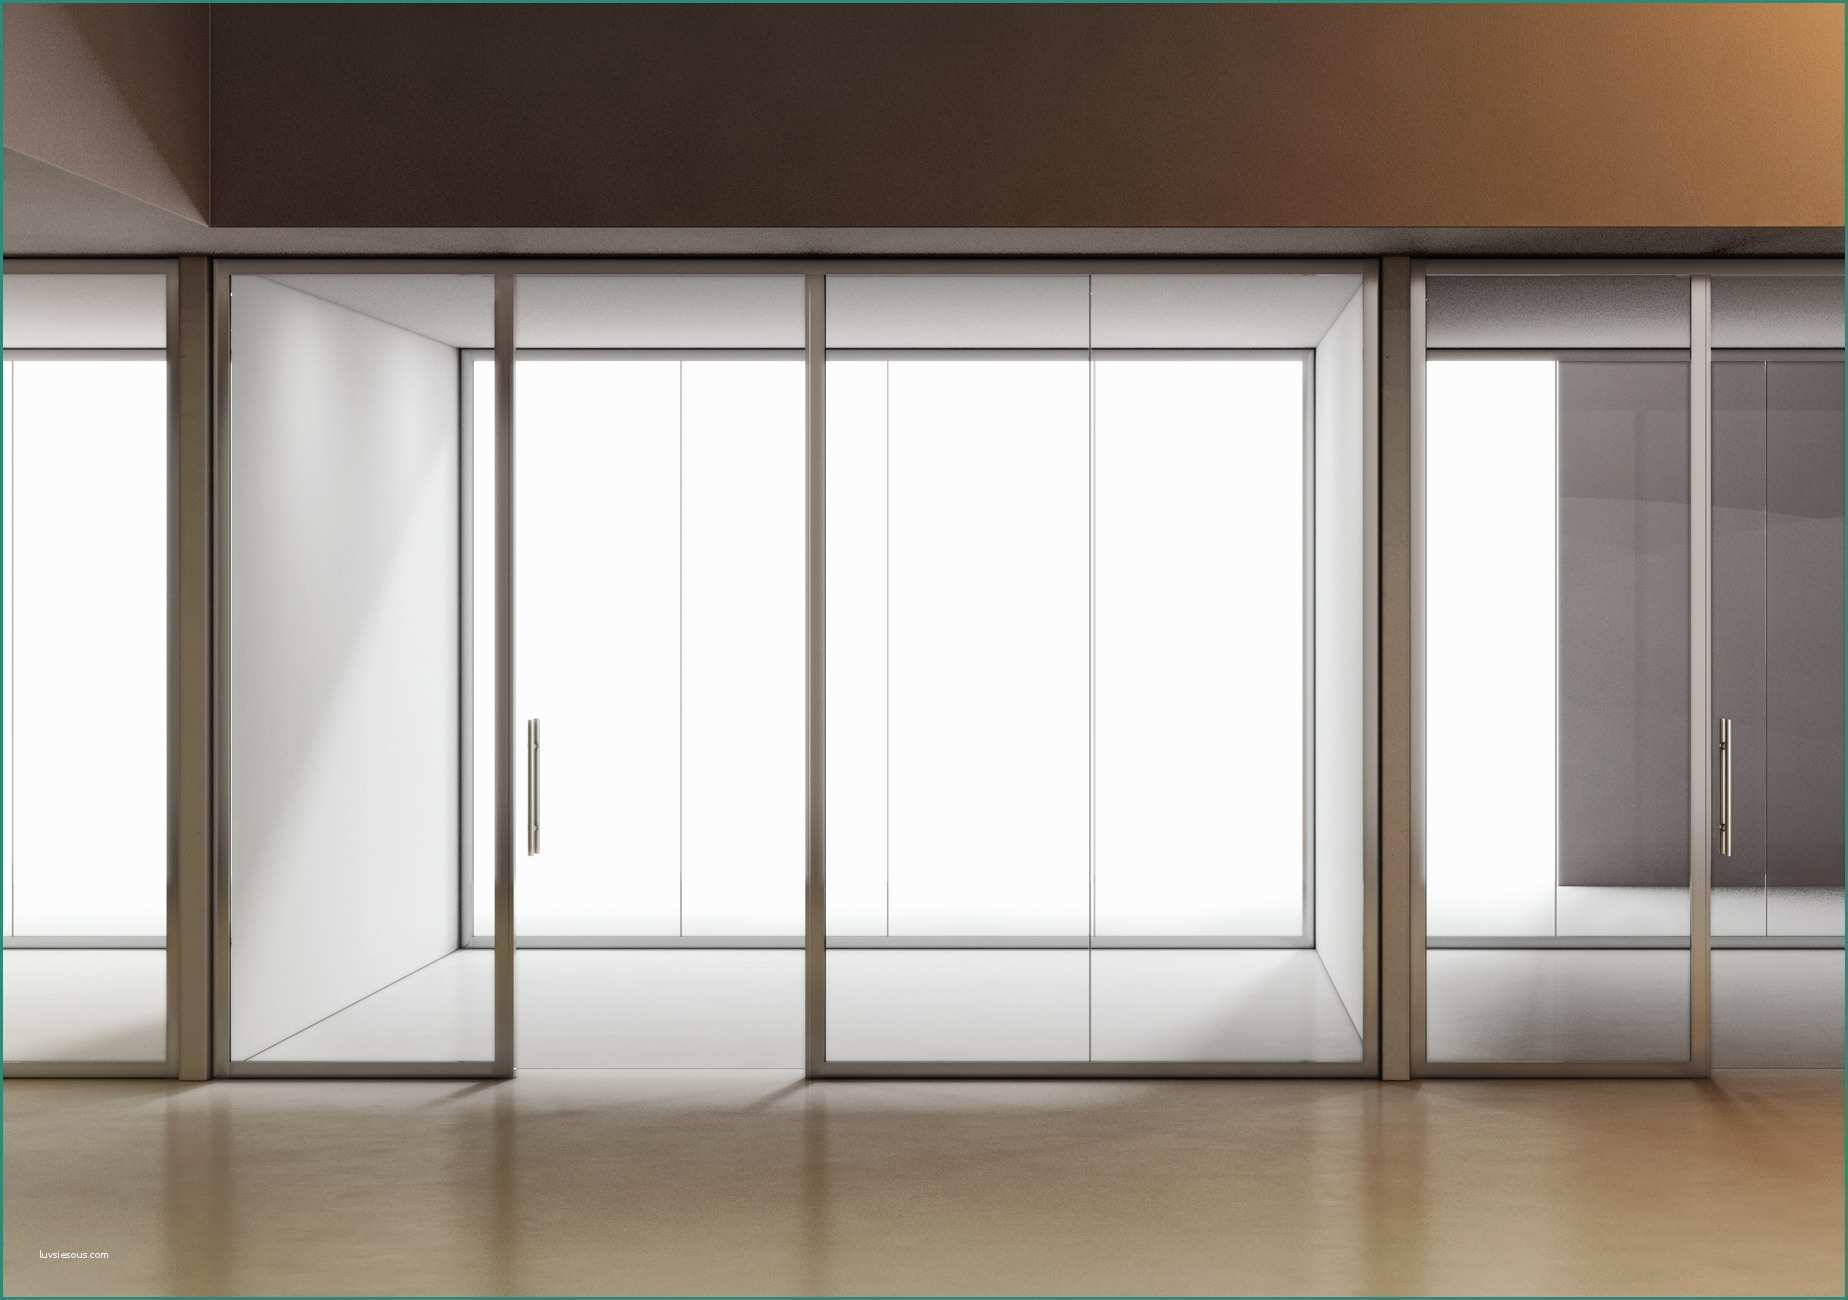 Pareti divisorie in vetro per interni casa e idee blog for Pareti divisorie in vetro per interni casa prezzi